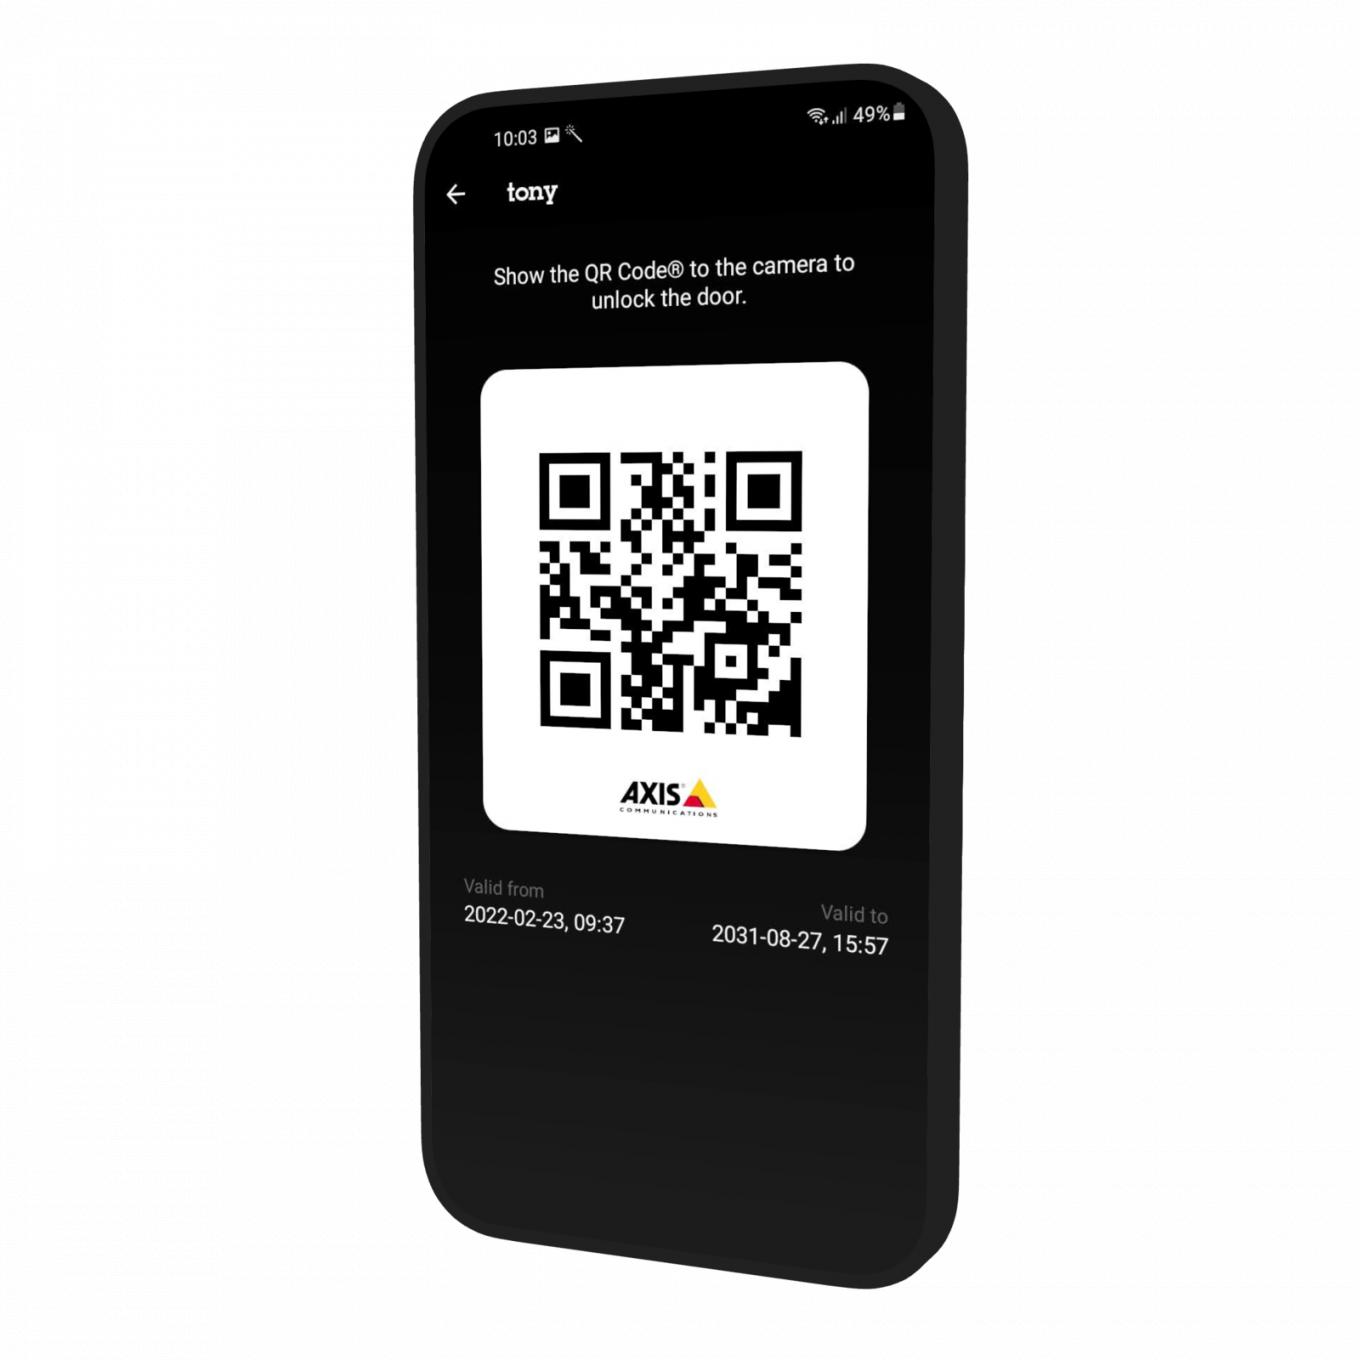 스마트폰의 AXIS Mobile Credential 앱.